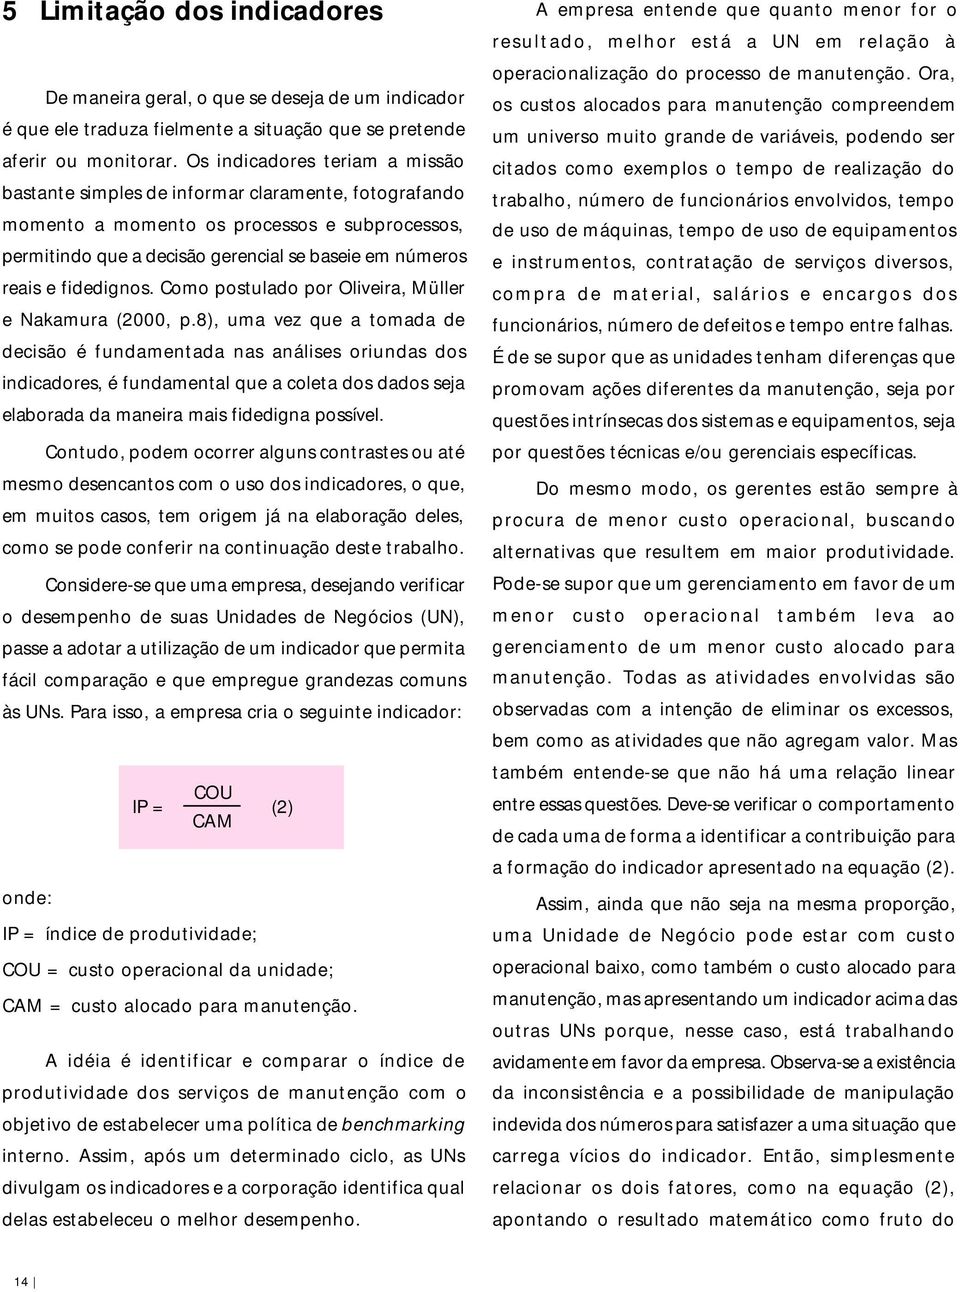 fidedignos. Como postulado por Oliveira, Müller e Nakamura (2000, p.